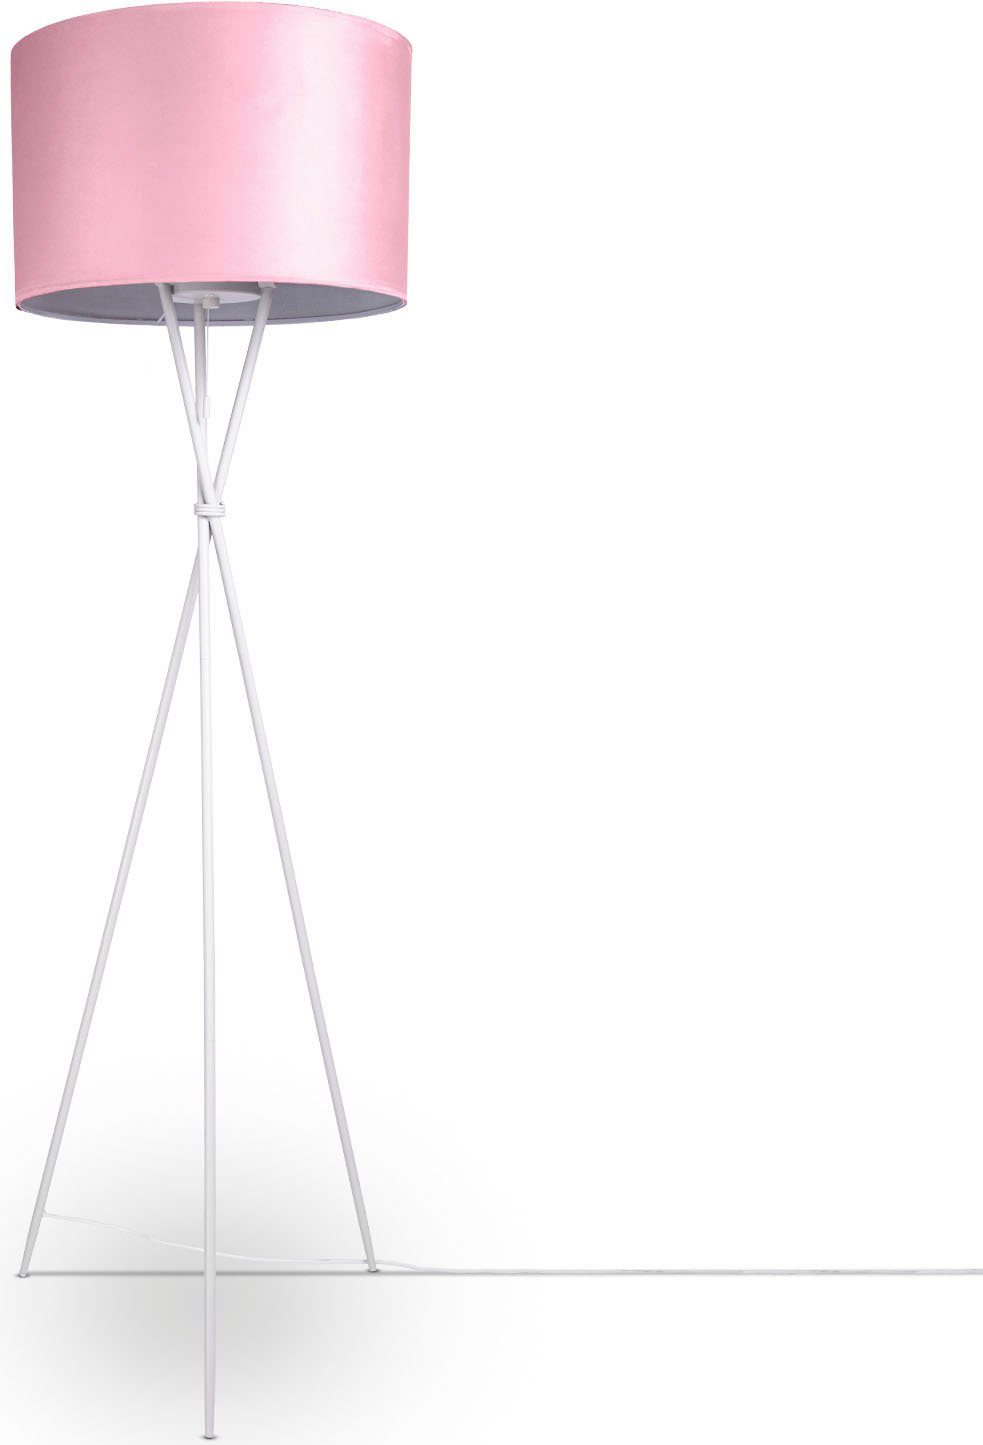 Paco Home Stehlampe Velour E27 Kate Filigran Dreibein uni Color, pink 177,5cm Höhe Wohnzimmer Standleuchte Leuchtmittel, ohne